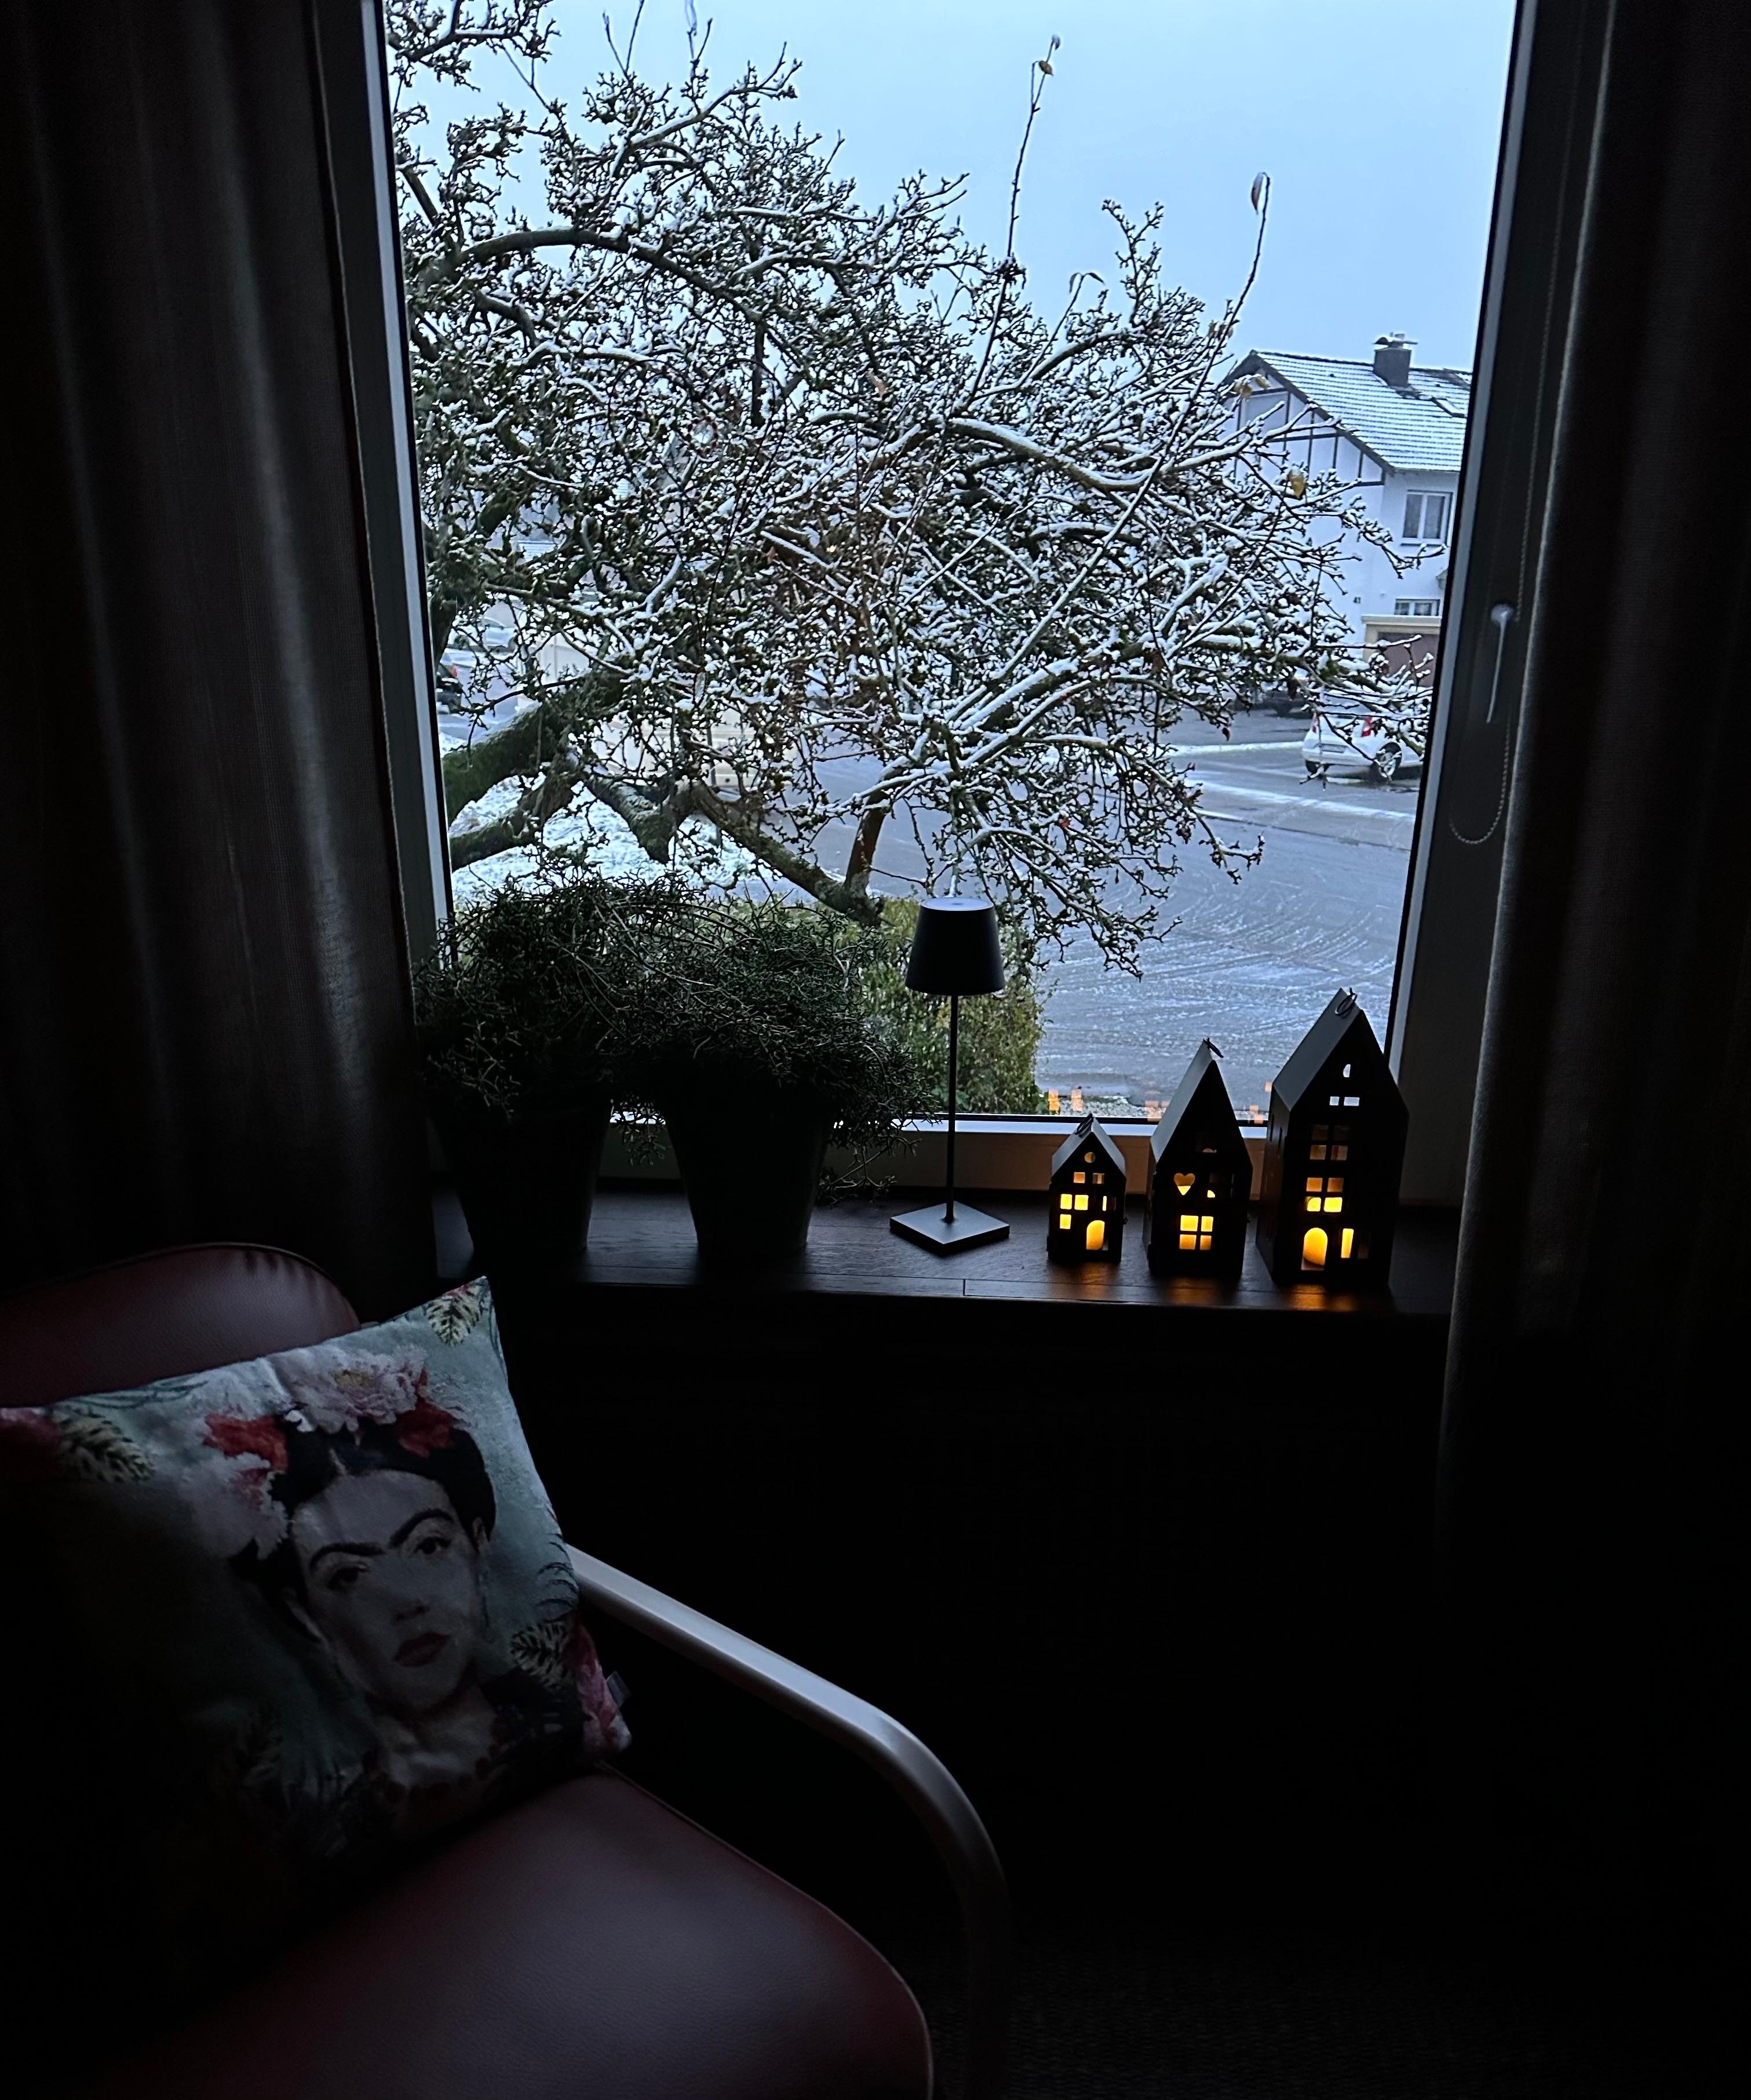 Leise rieselt der erste Schnee ❄️❄️❄️
und die Lichterhäuschen leuchten.
#Winterdeko